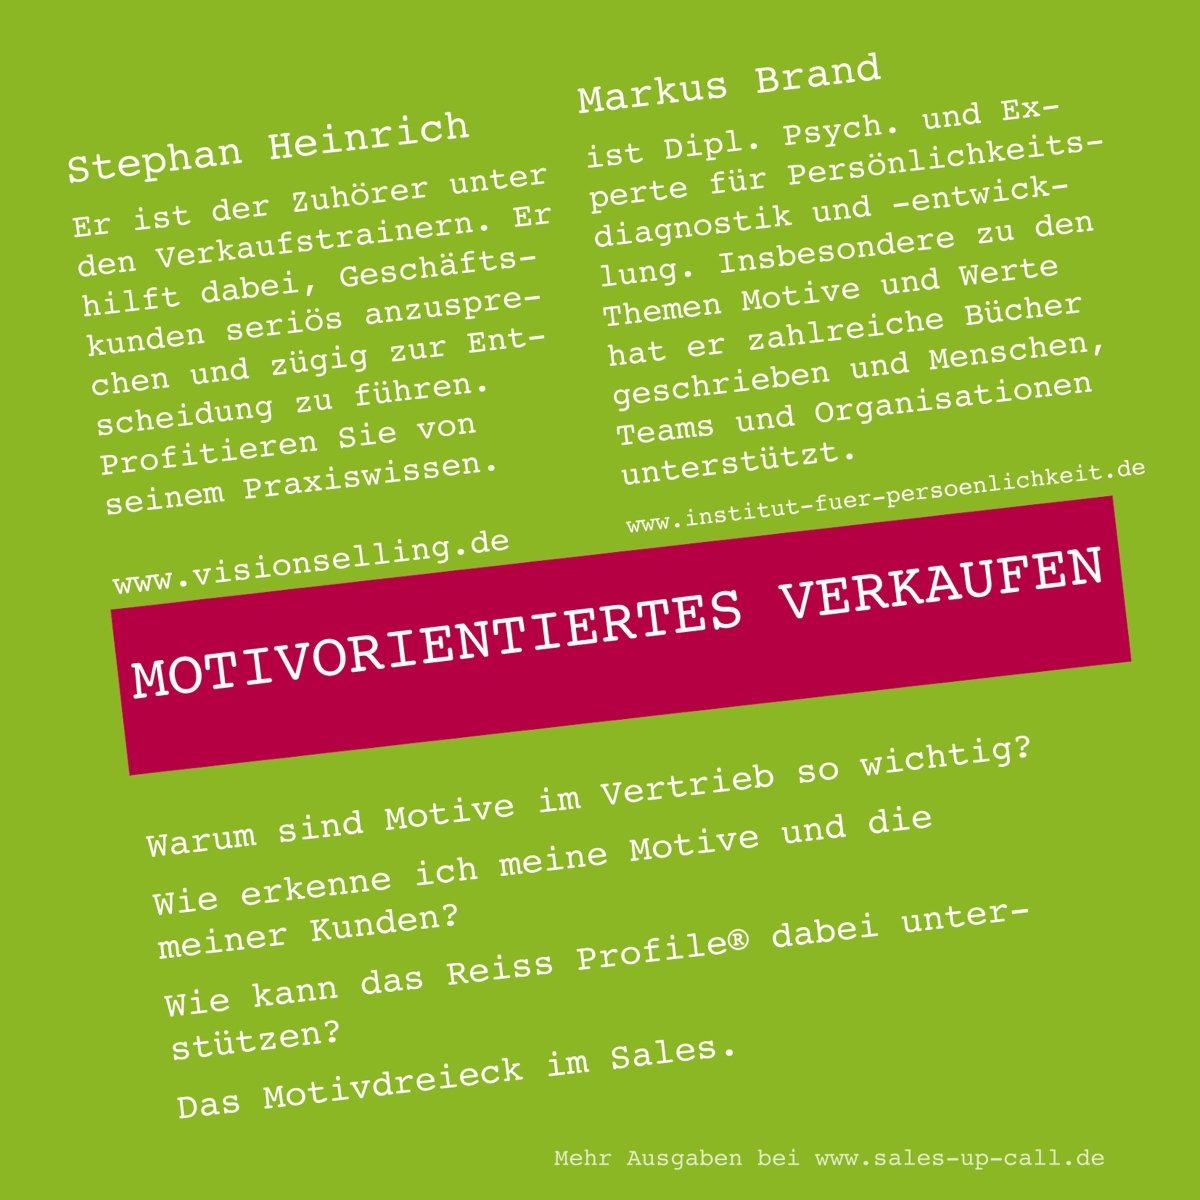 Motivorientiertes Verkaufen - Sales-up-Call - Stephan Heinrich